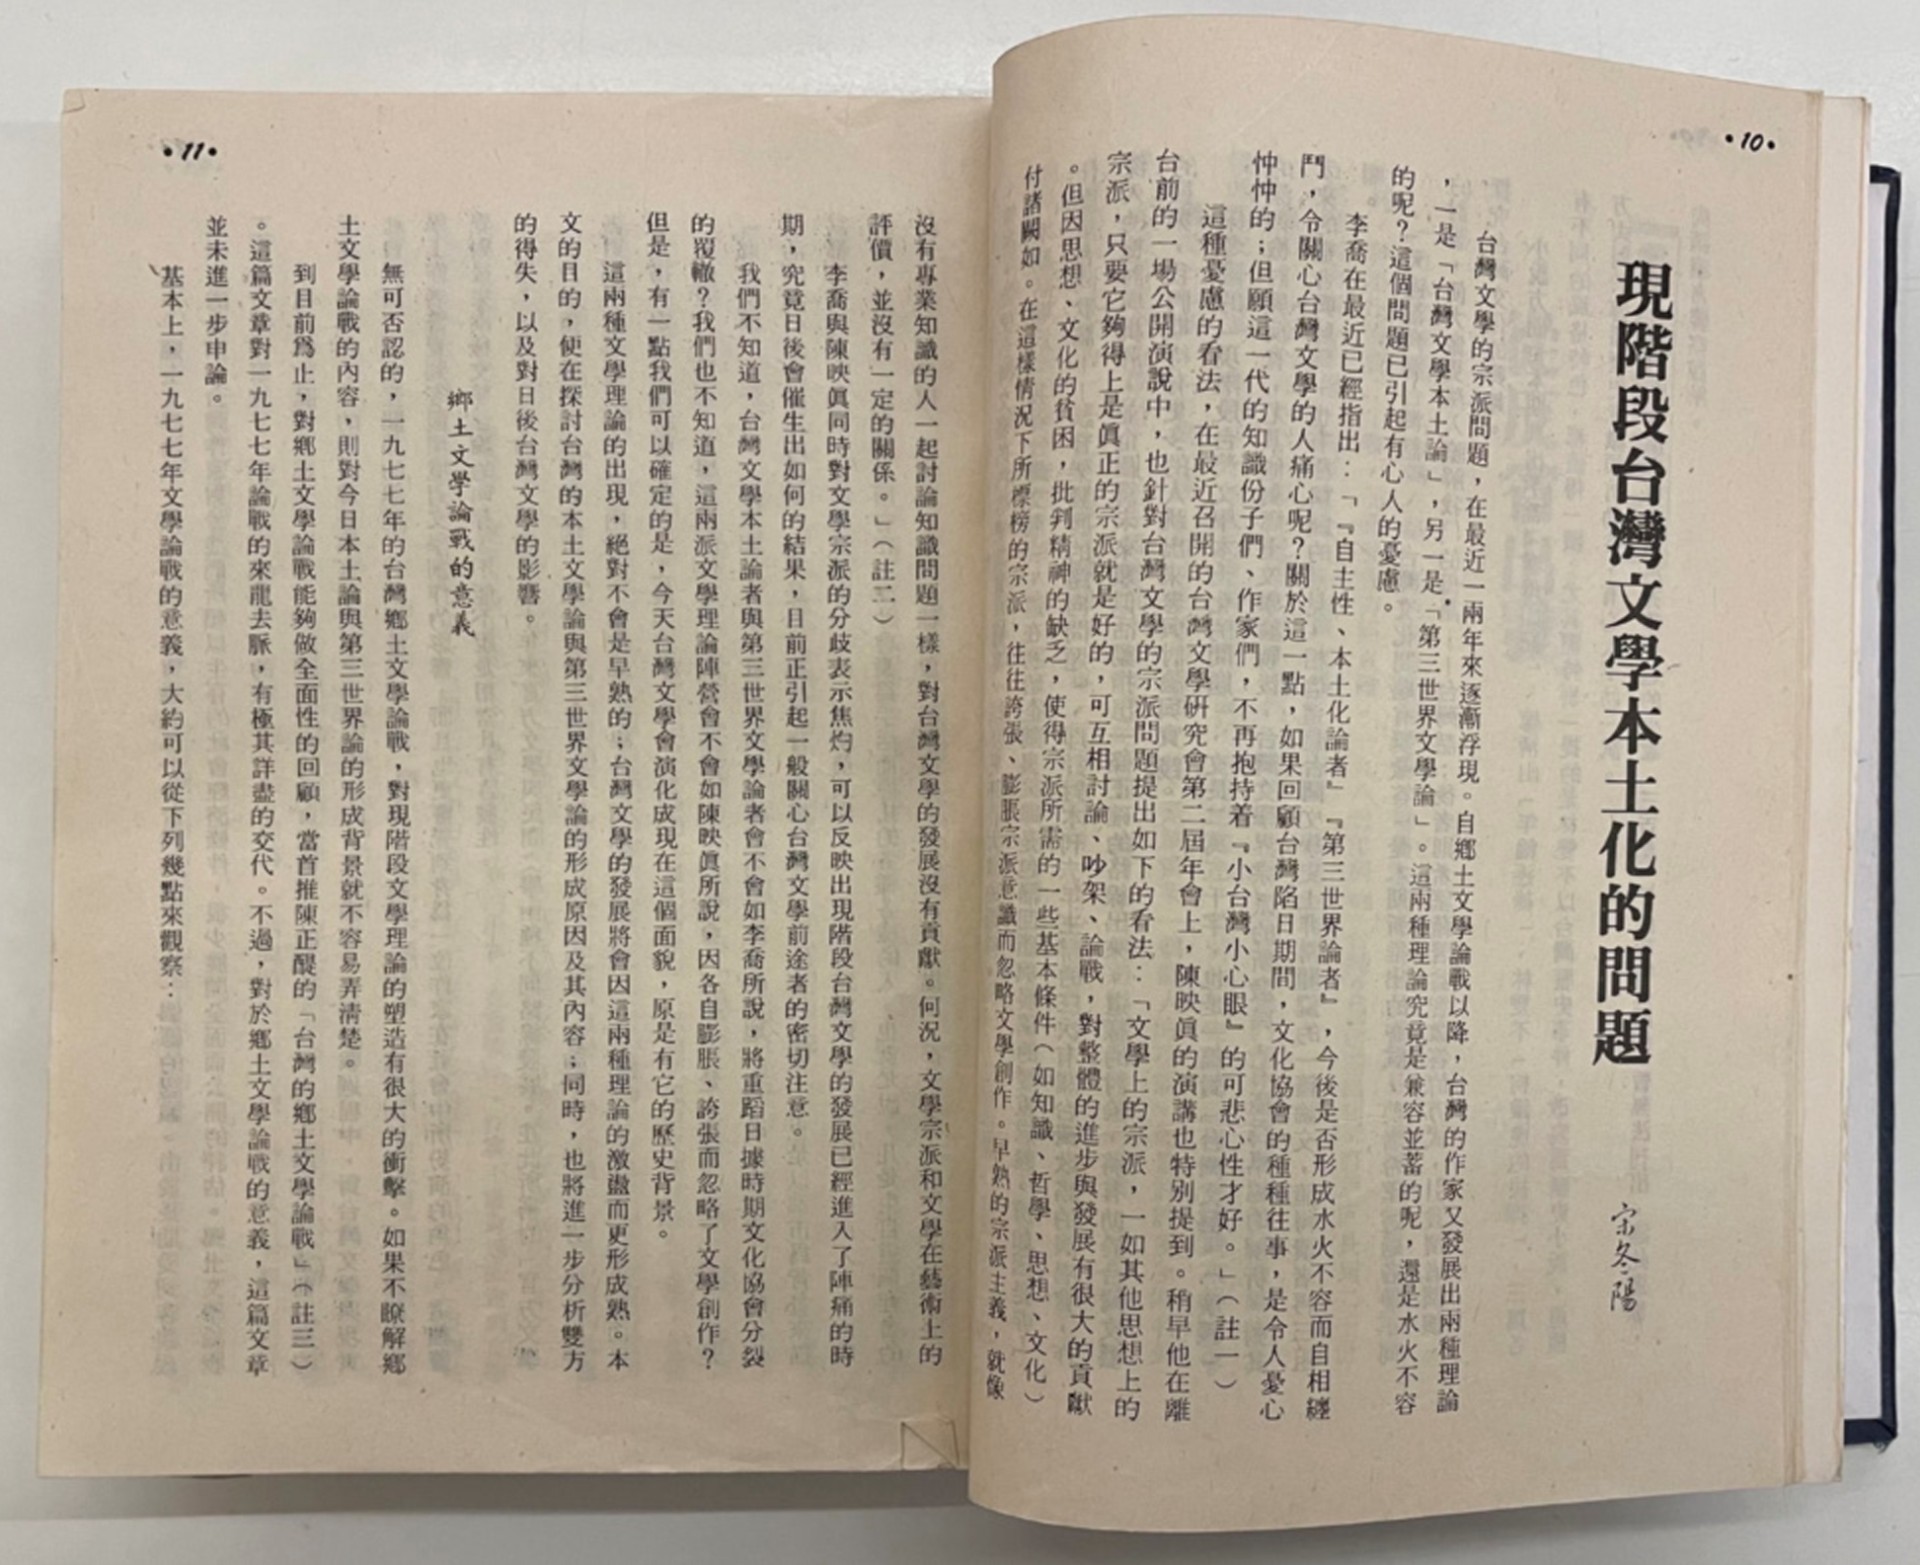 《台灣文藝》， 宋冬陽，〈現階段台灣文學本土化的問題〉，1984.01-圖片